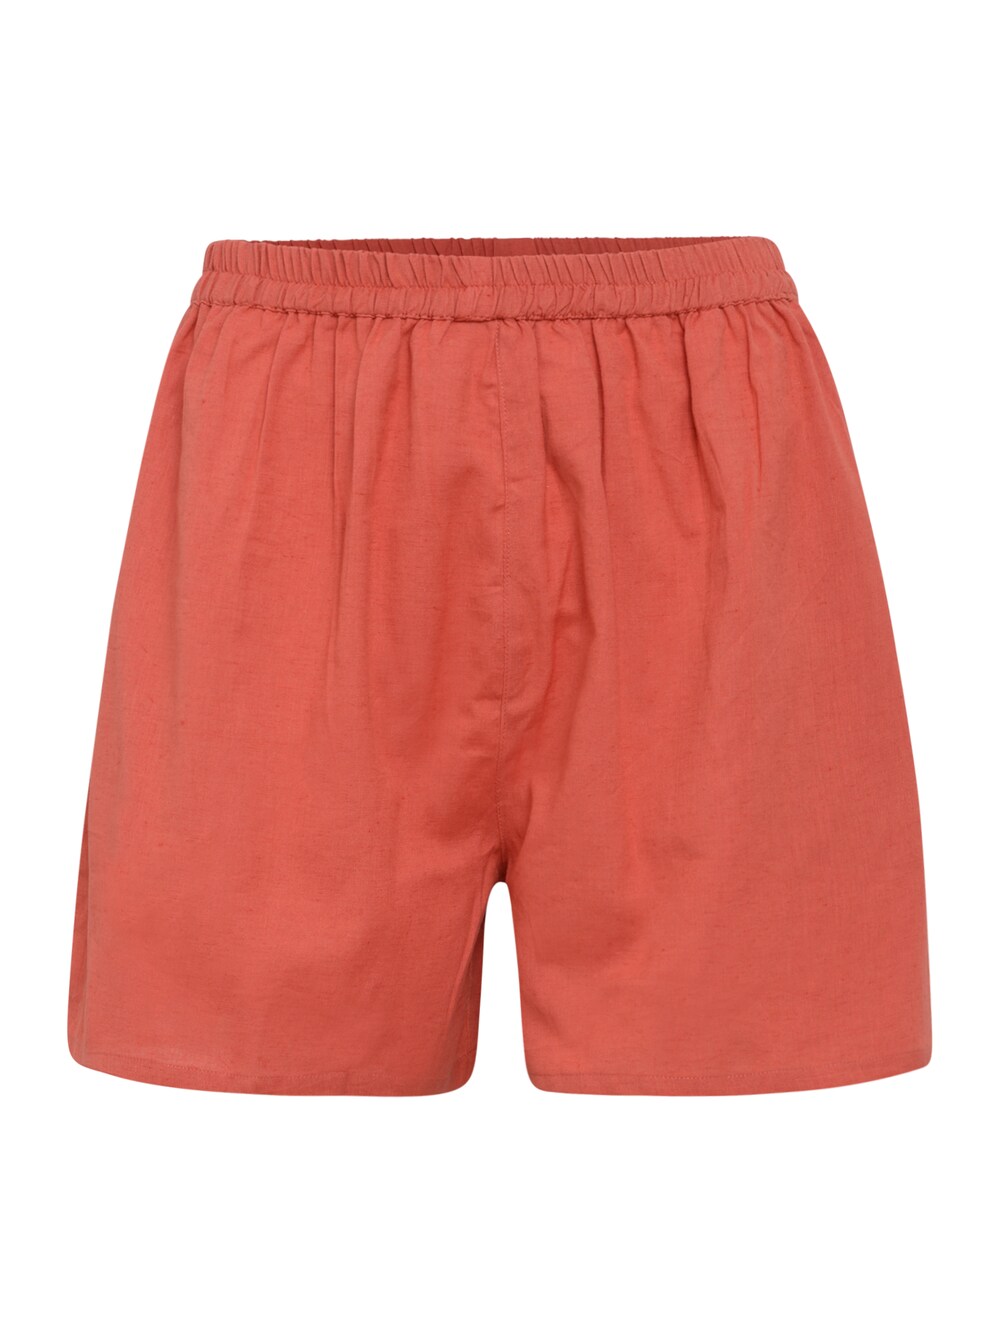 Обычные брюки Dorothy Perkins Tall, темно-оранжевый